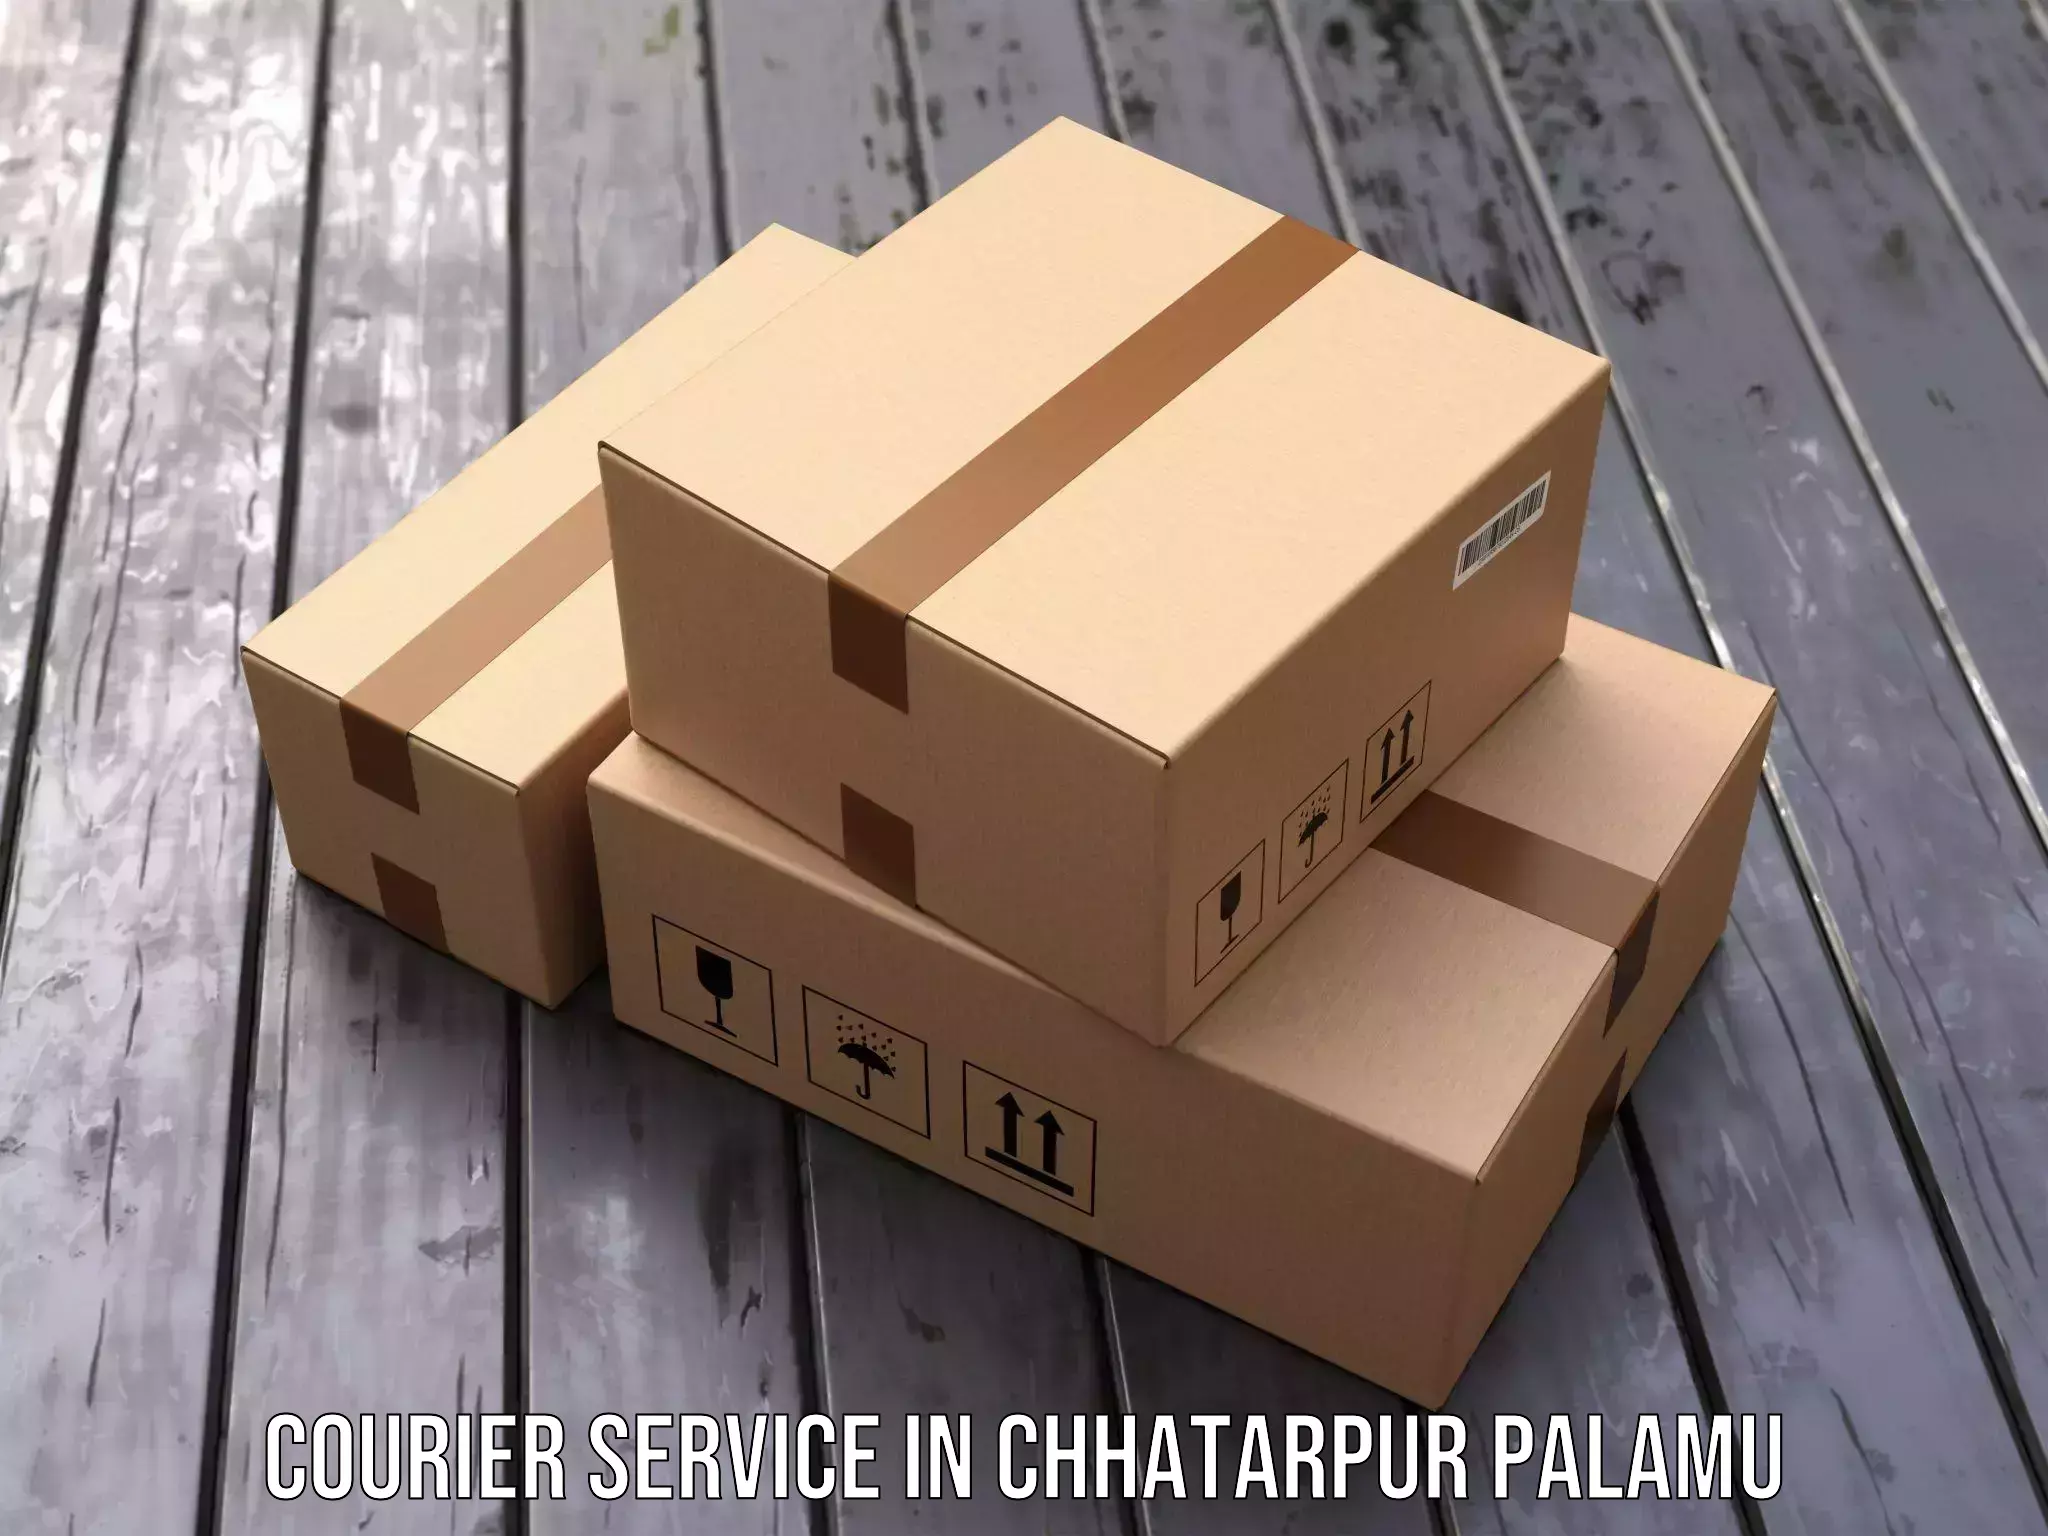 Trackable shipping service in Chhatarpur Palamu